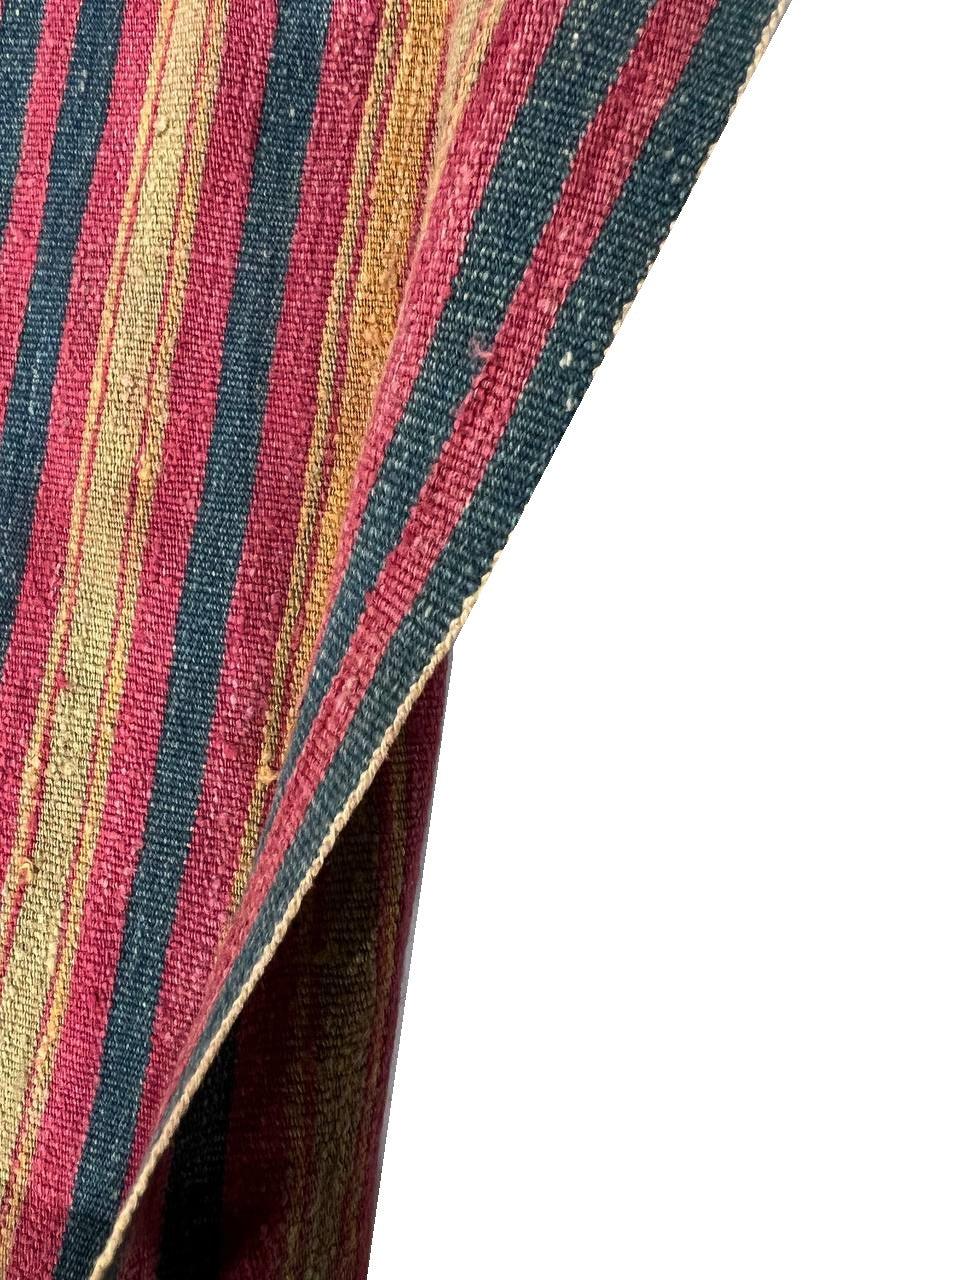 Canvello Circa 1970 Fine Flat Weave Vintage Textile - 4'6'' X 8'